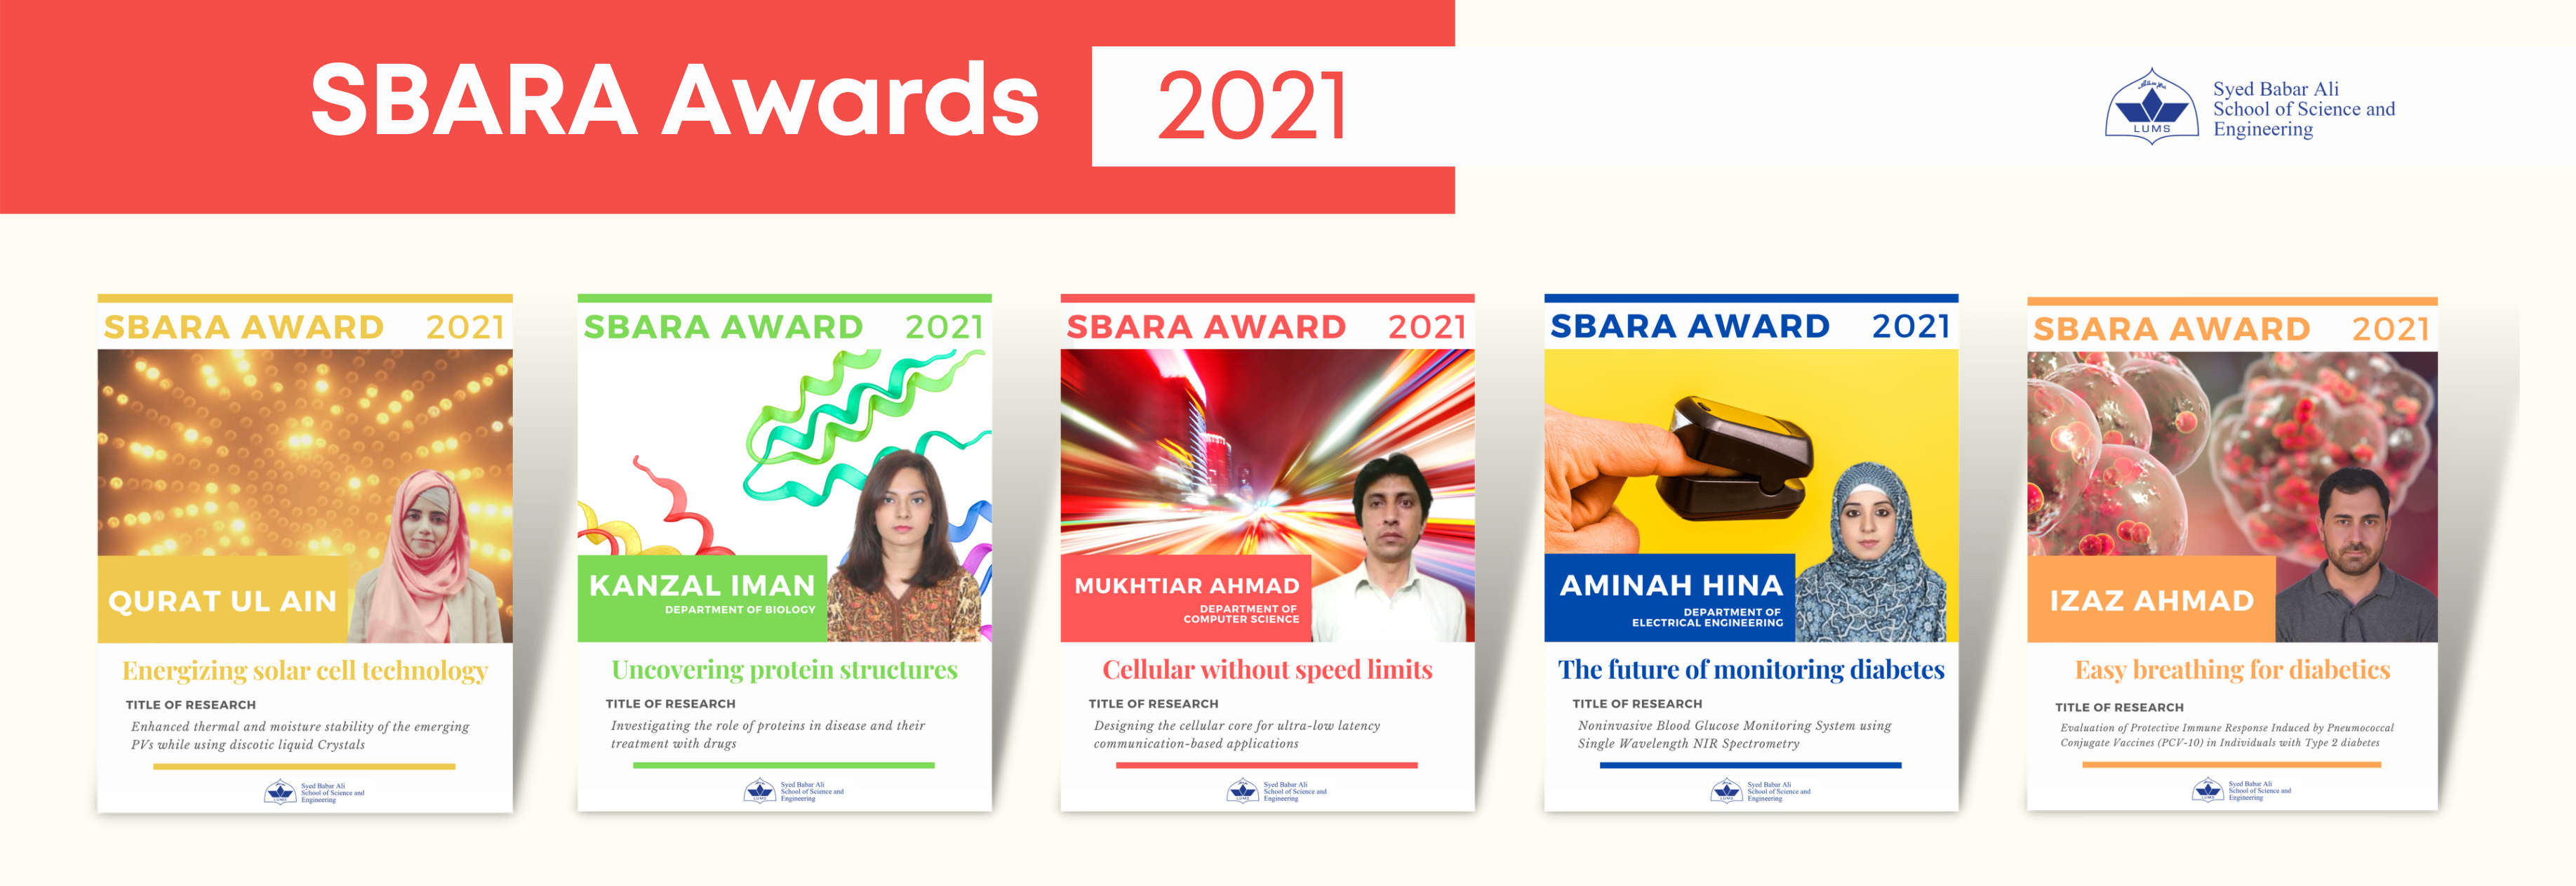 SBARA Awards 2021